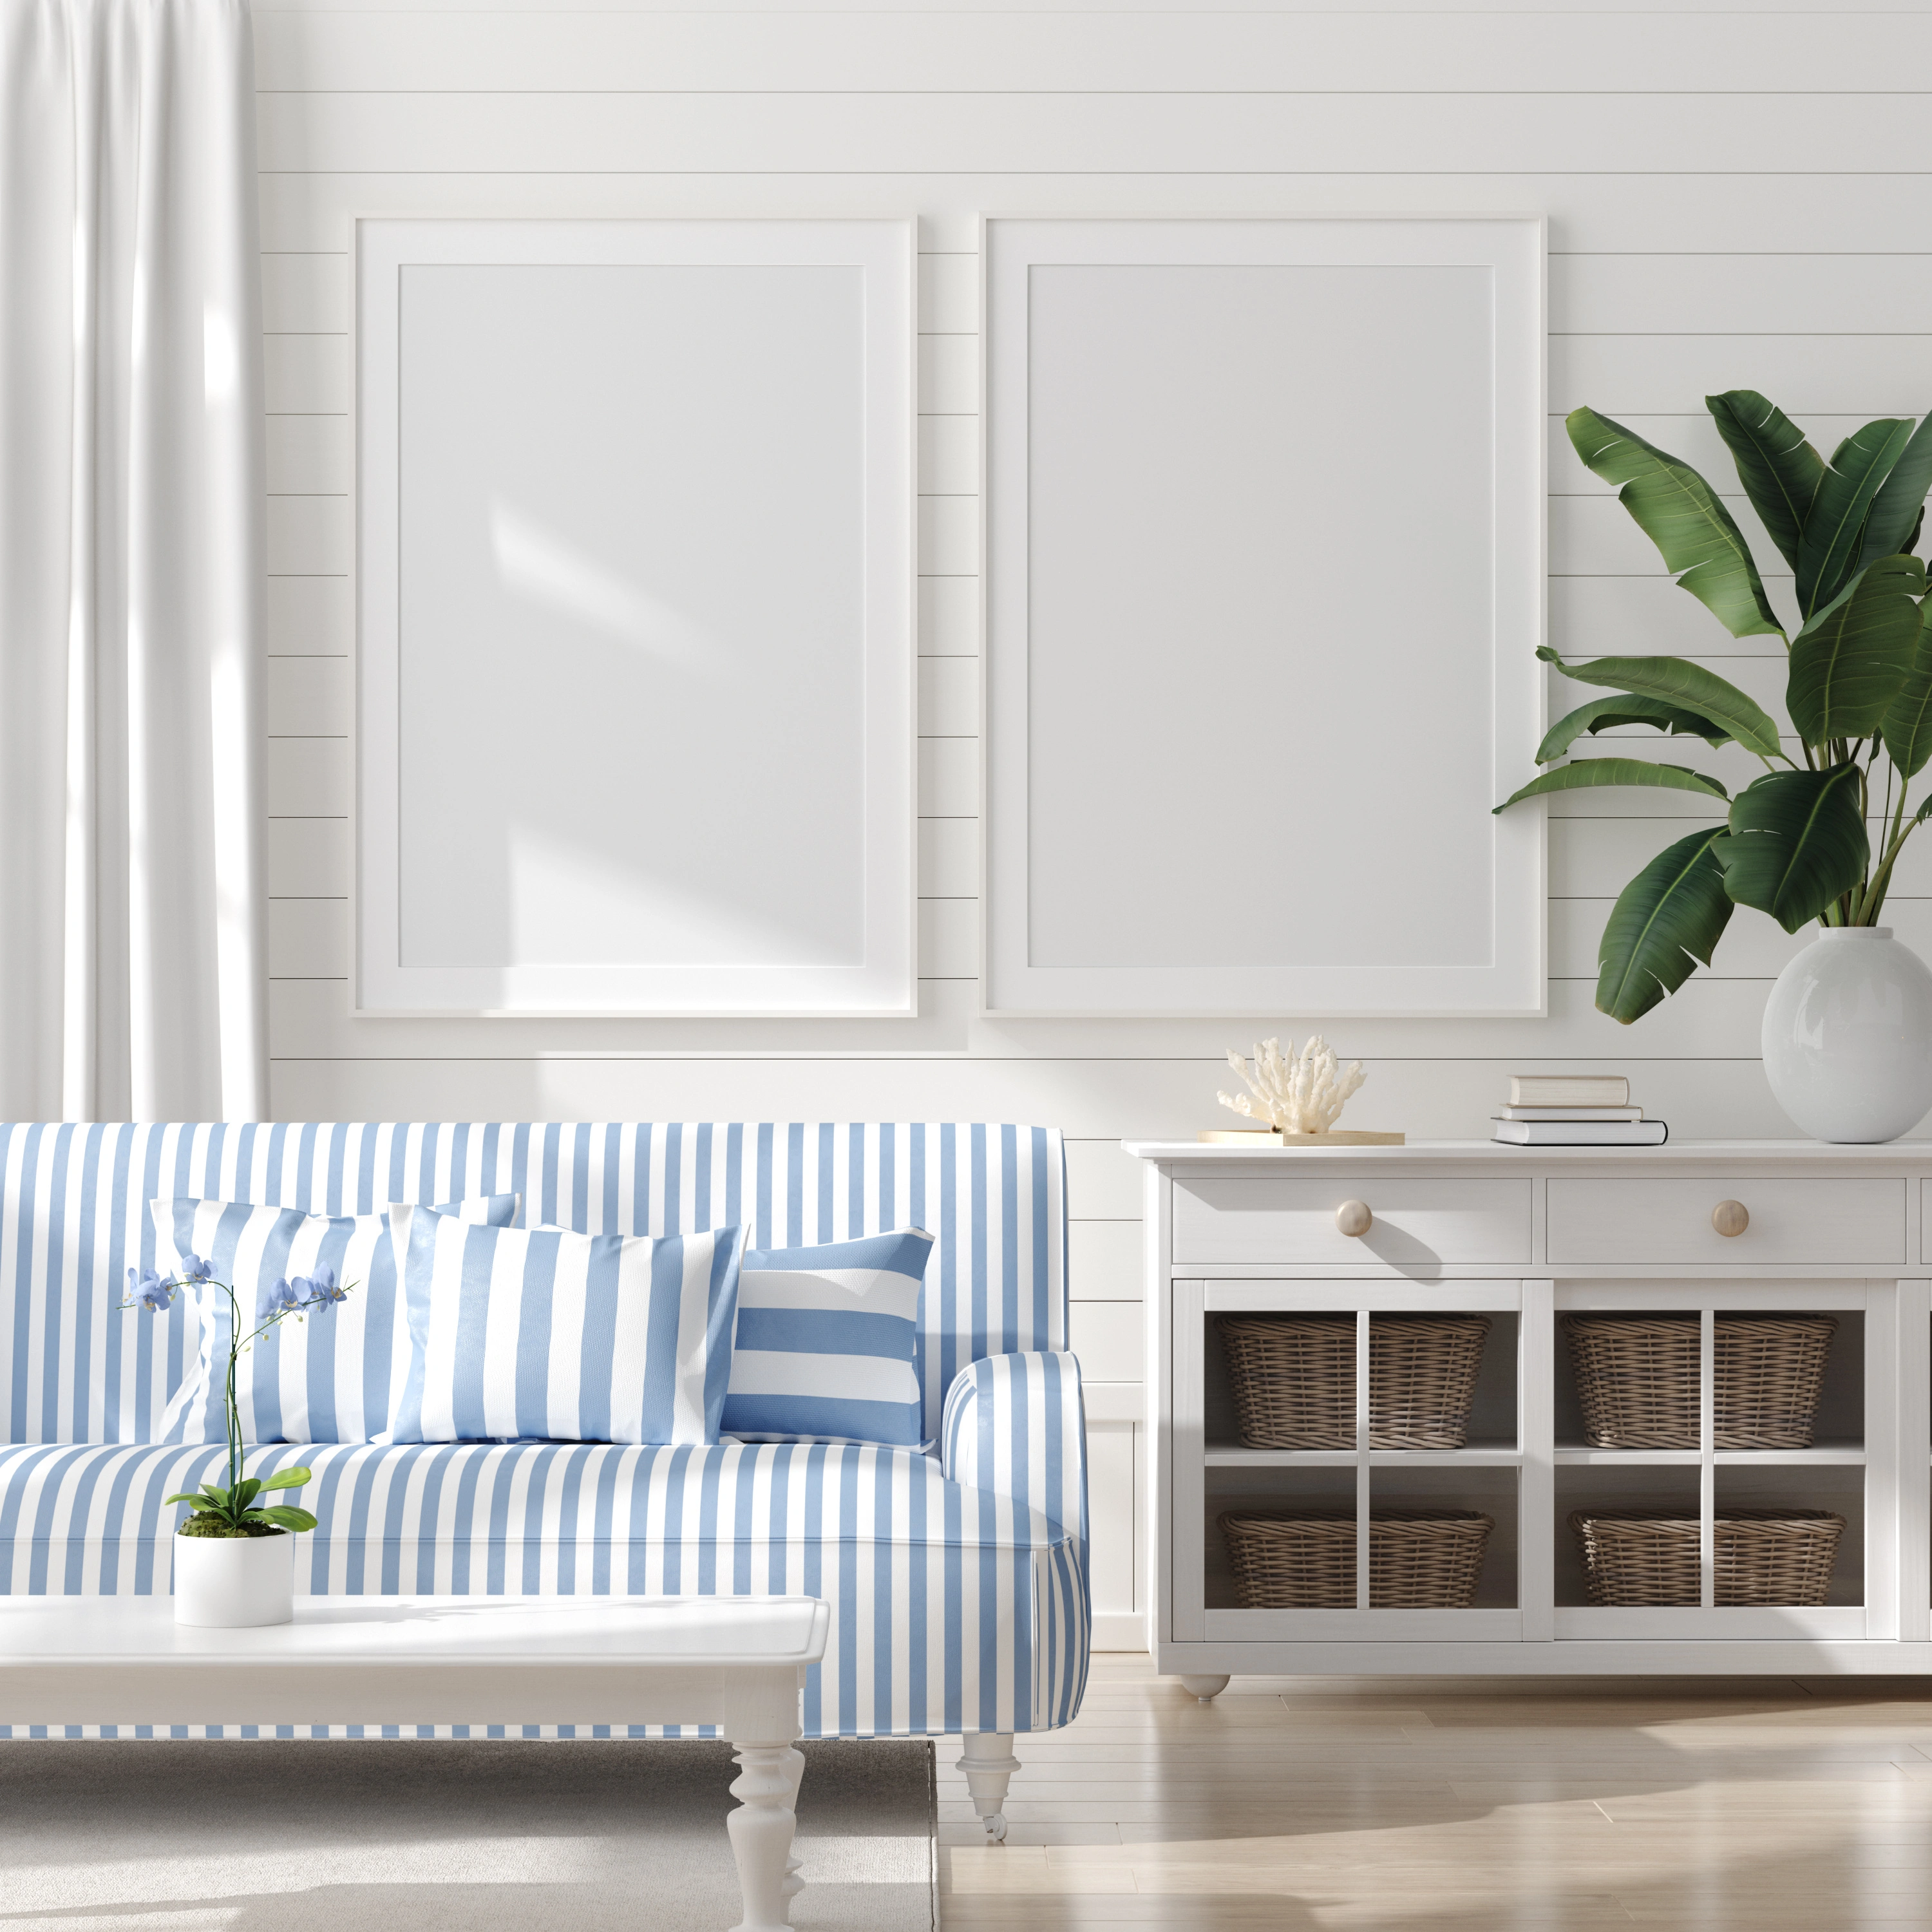 Inspiracja prezentująca salon w kolorze białym z kanapą w niebieskie paski, styl marynistyczny. Element charakterystyczny: kanapa w niebieskie paski